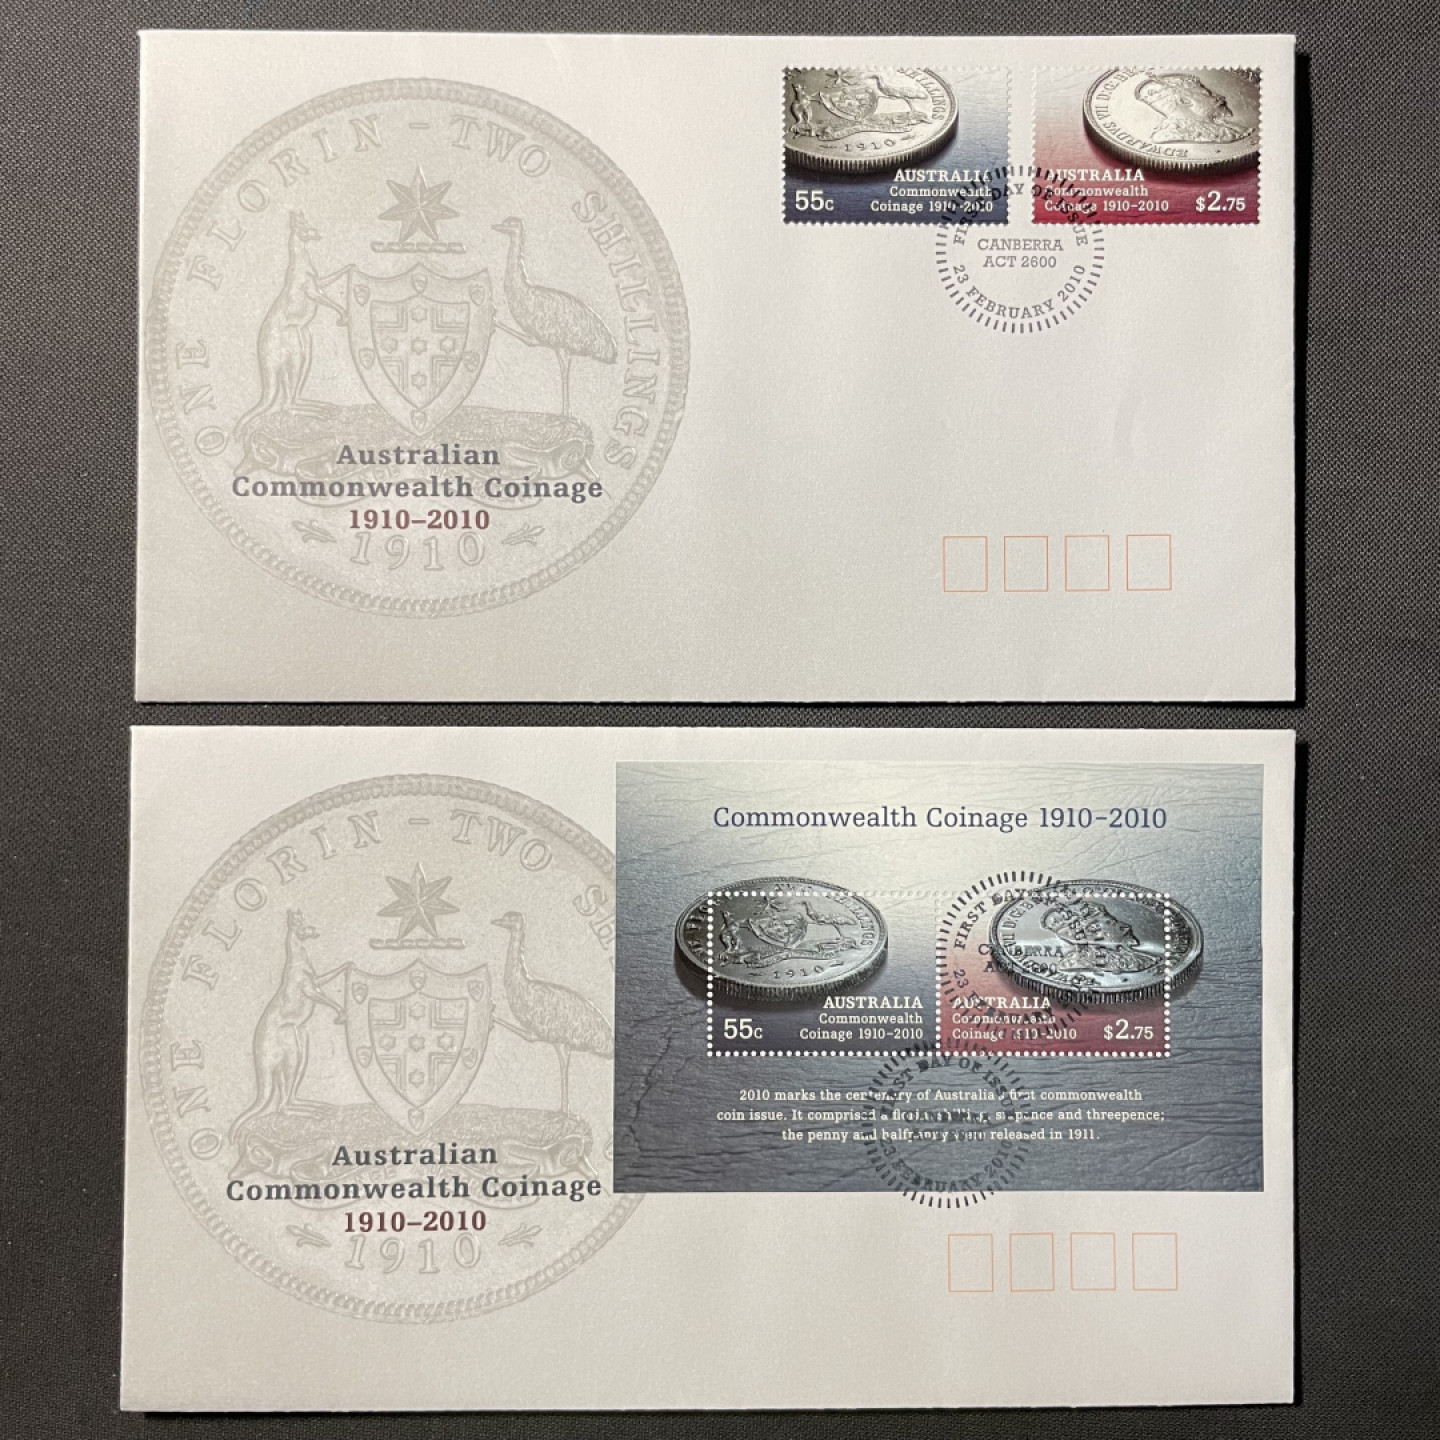 【澳大利亚】2010 联邦铸币百年纪念 套票和全张官封